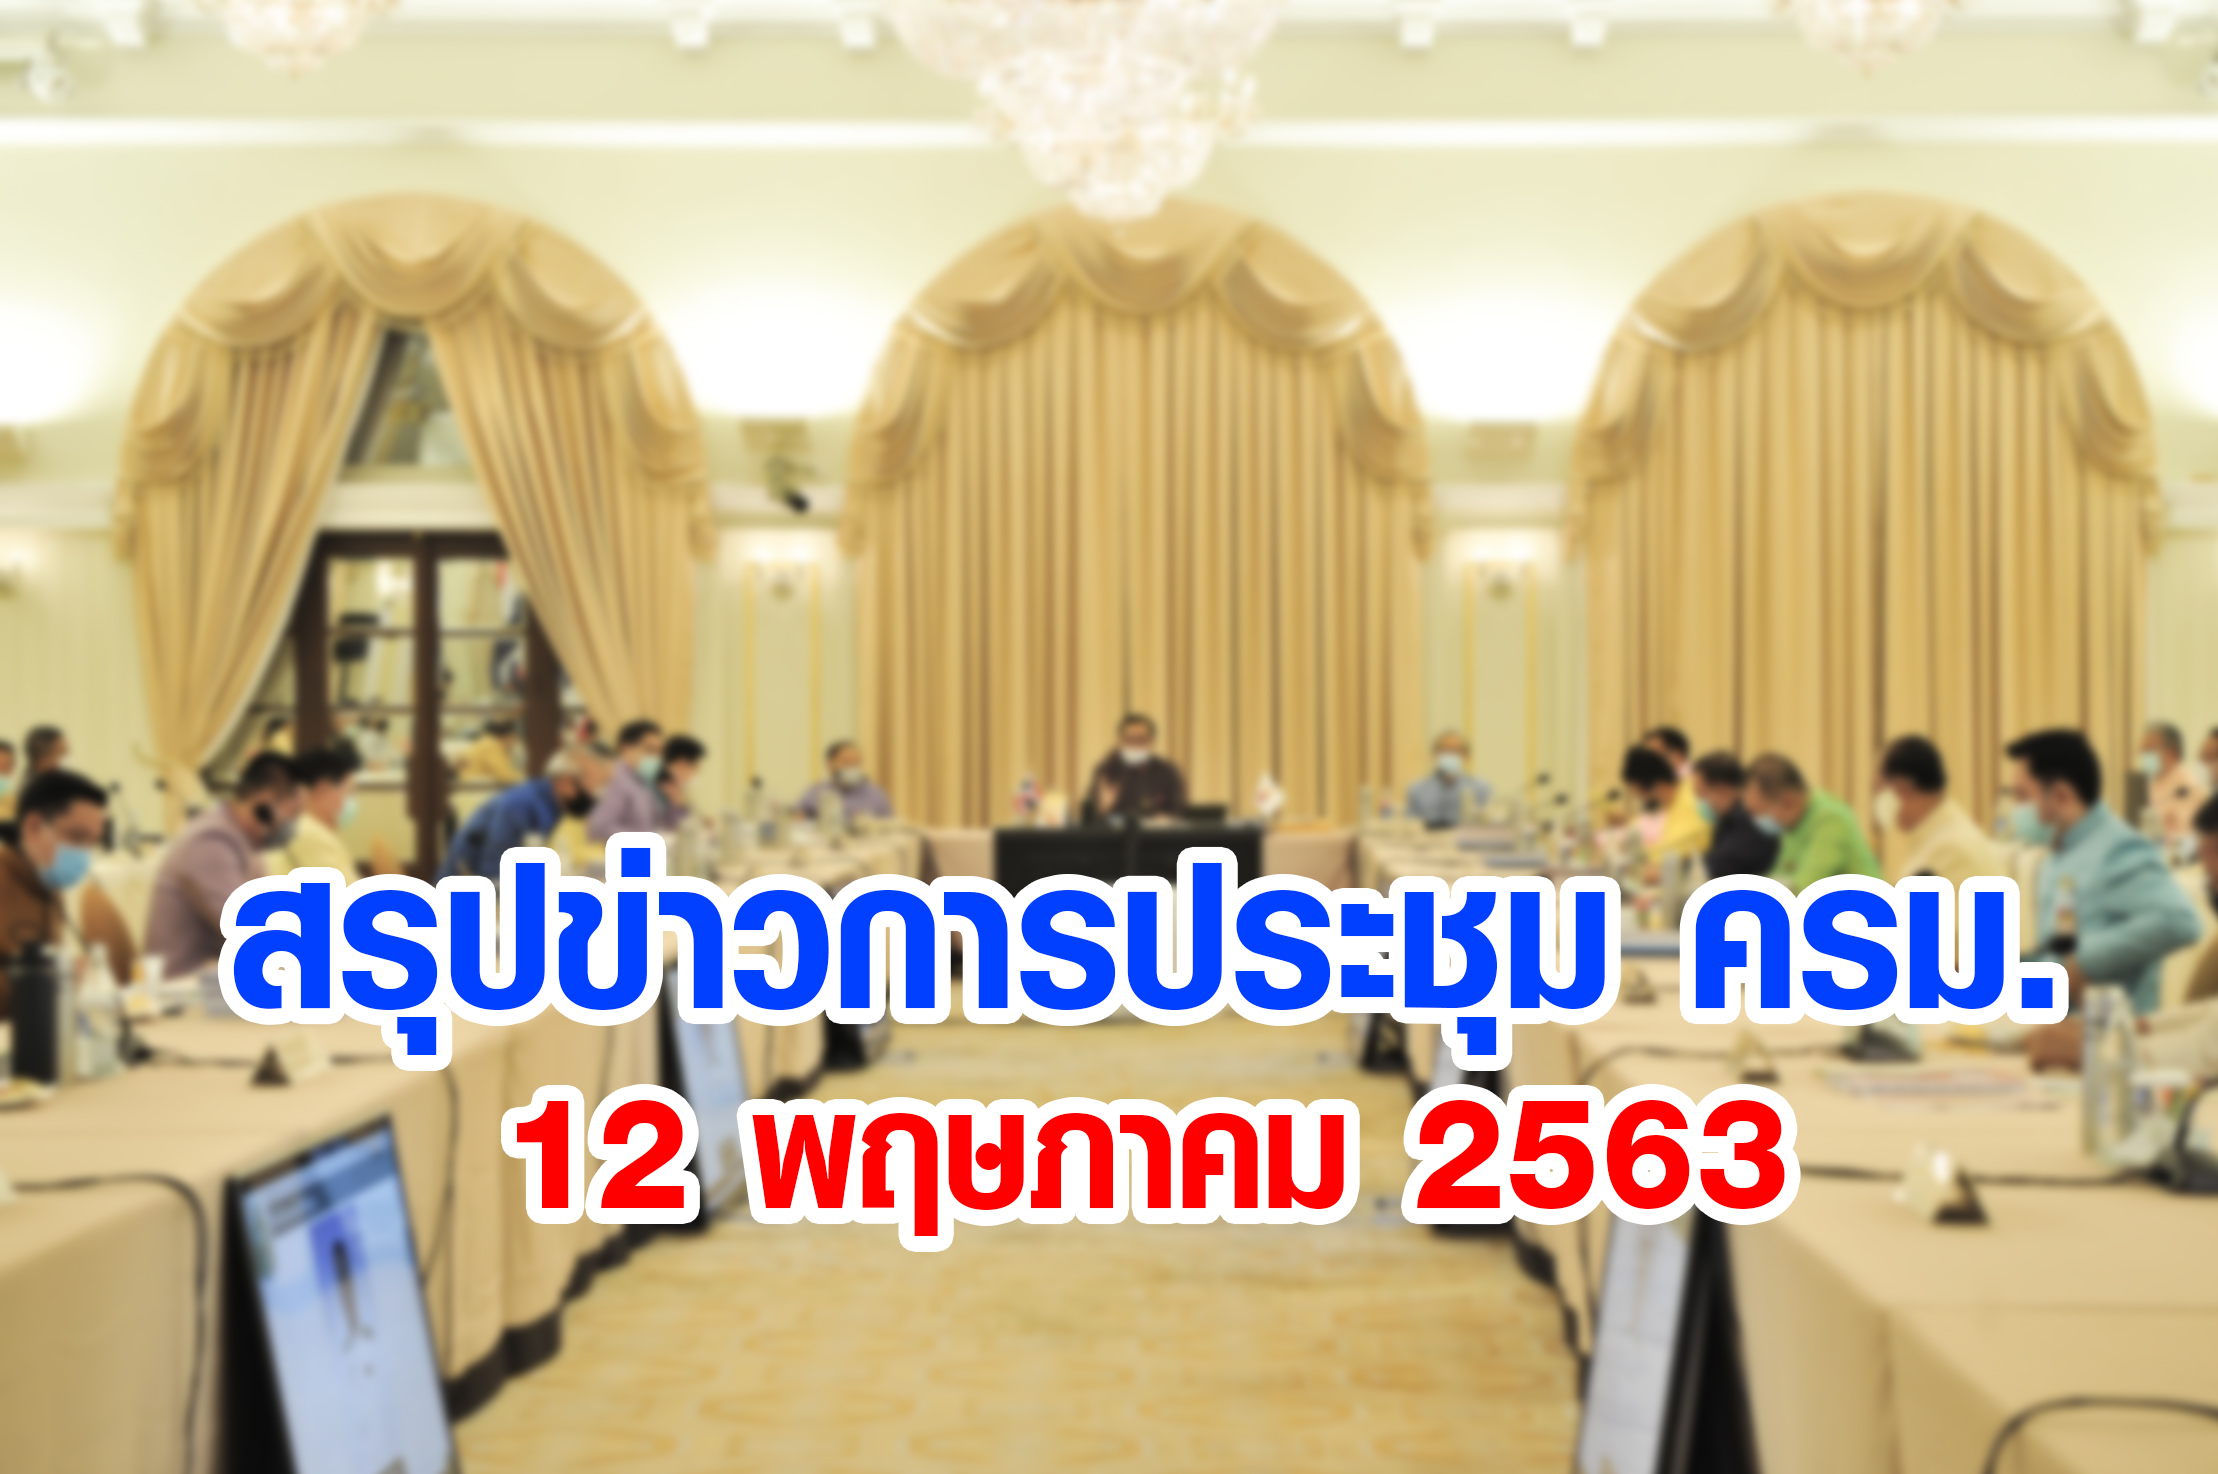 สรุปข่าวการประชุมคณะรัฐมนตรี 12 พ.ค. 2563